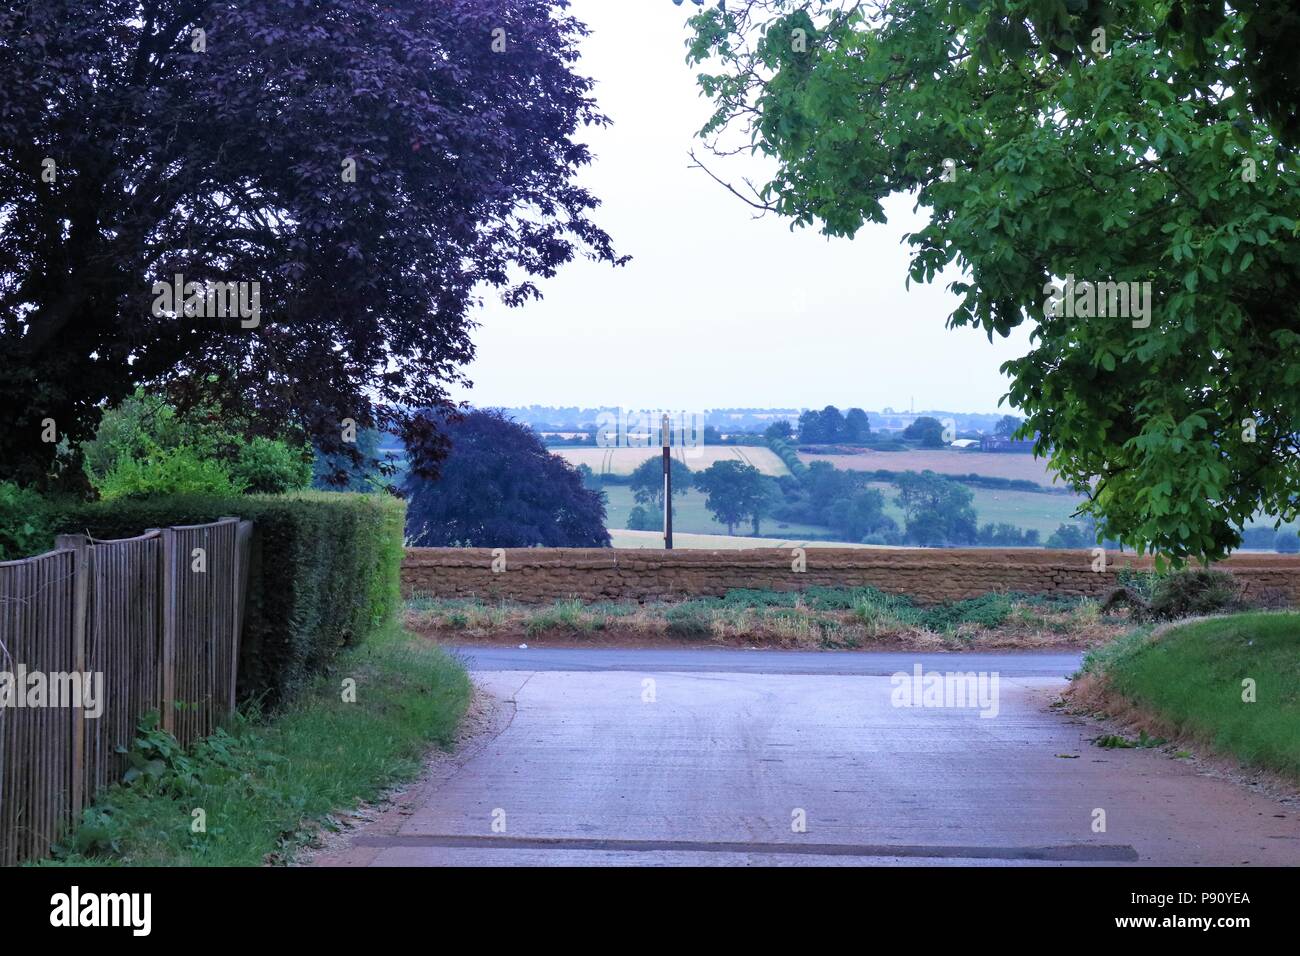 Enmarca la vista de la campiña de Oxfordshire tomadas en Banbury mostrando rolling hills. Foto de stock